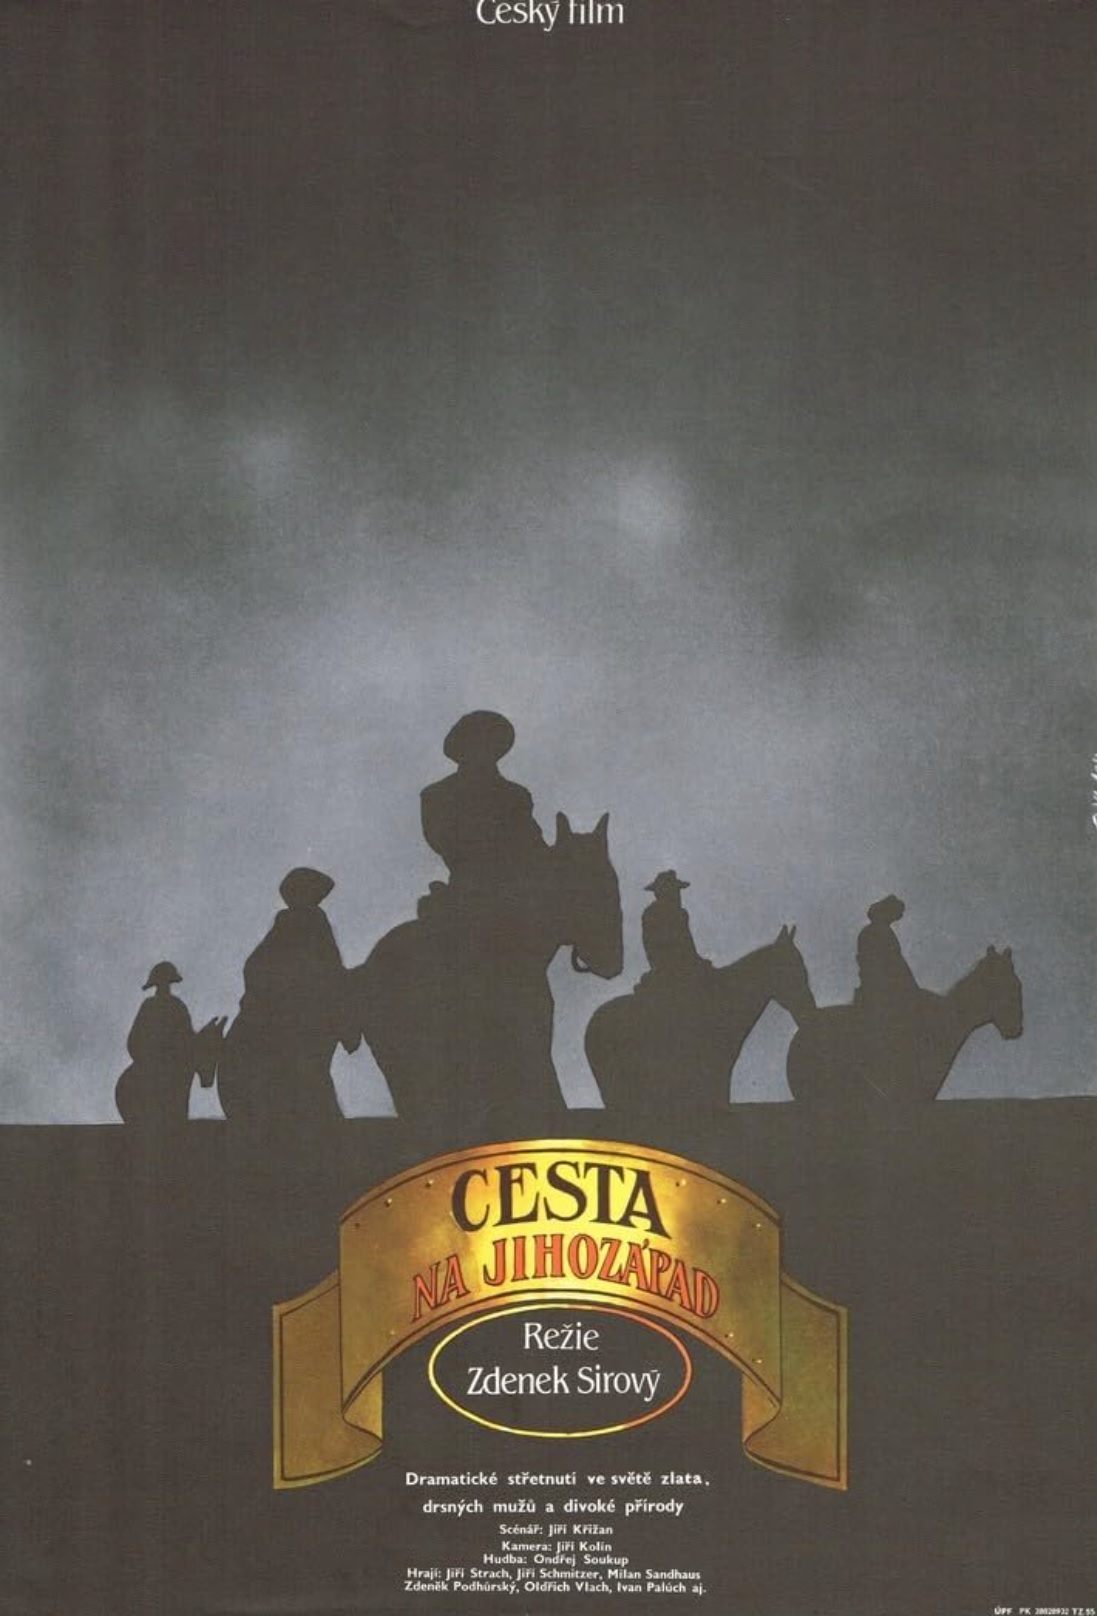 Plakát pro film “Cesta na jihozápad”